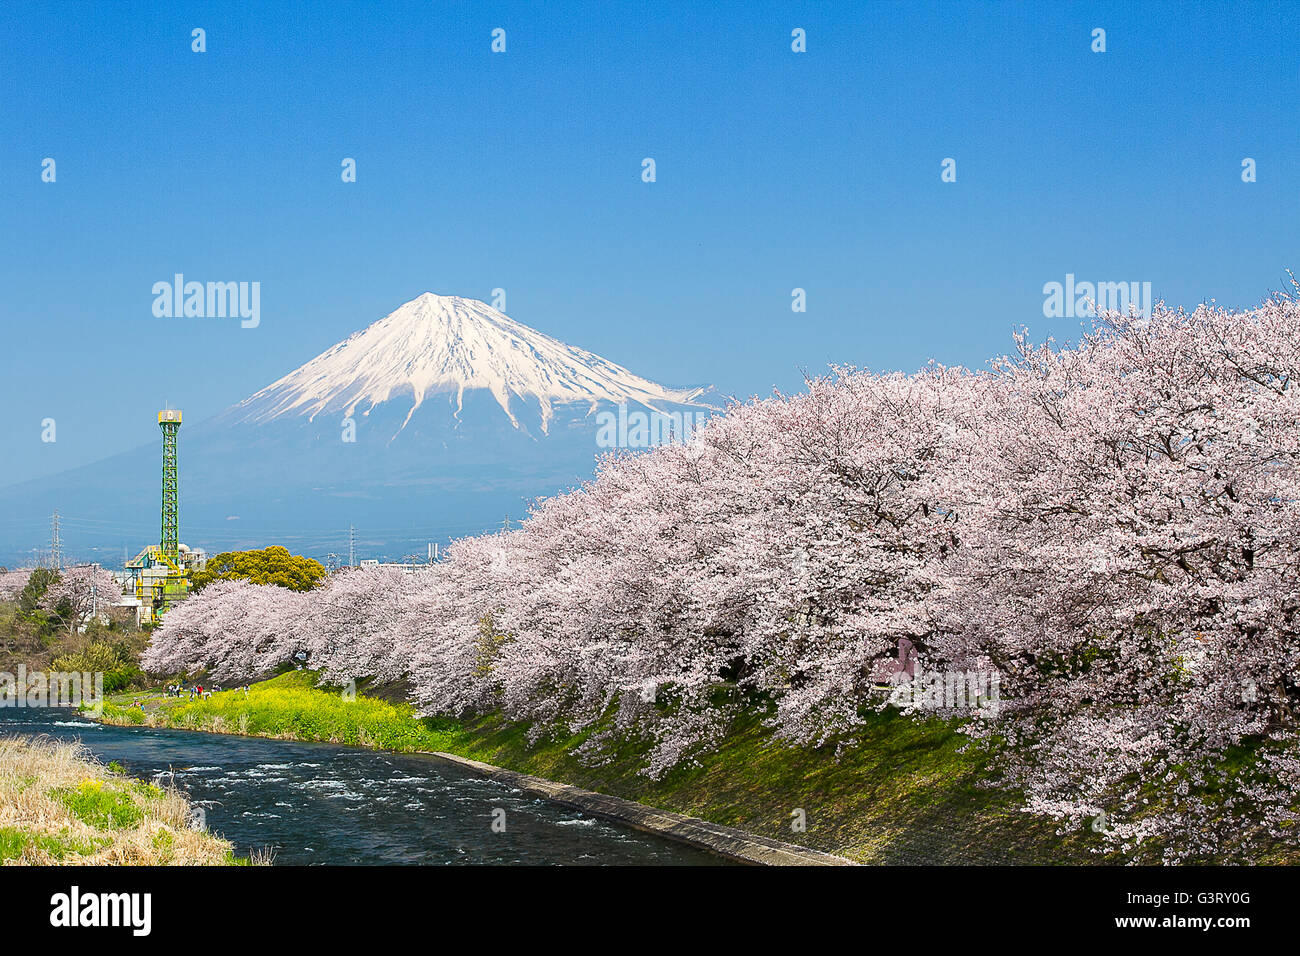 Sakura blossoms and Mountain Fuji at the river in Japan spring season Stock Photo